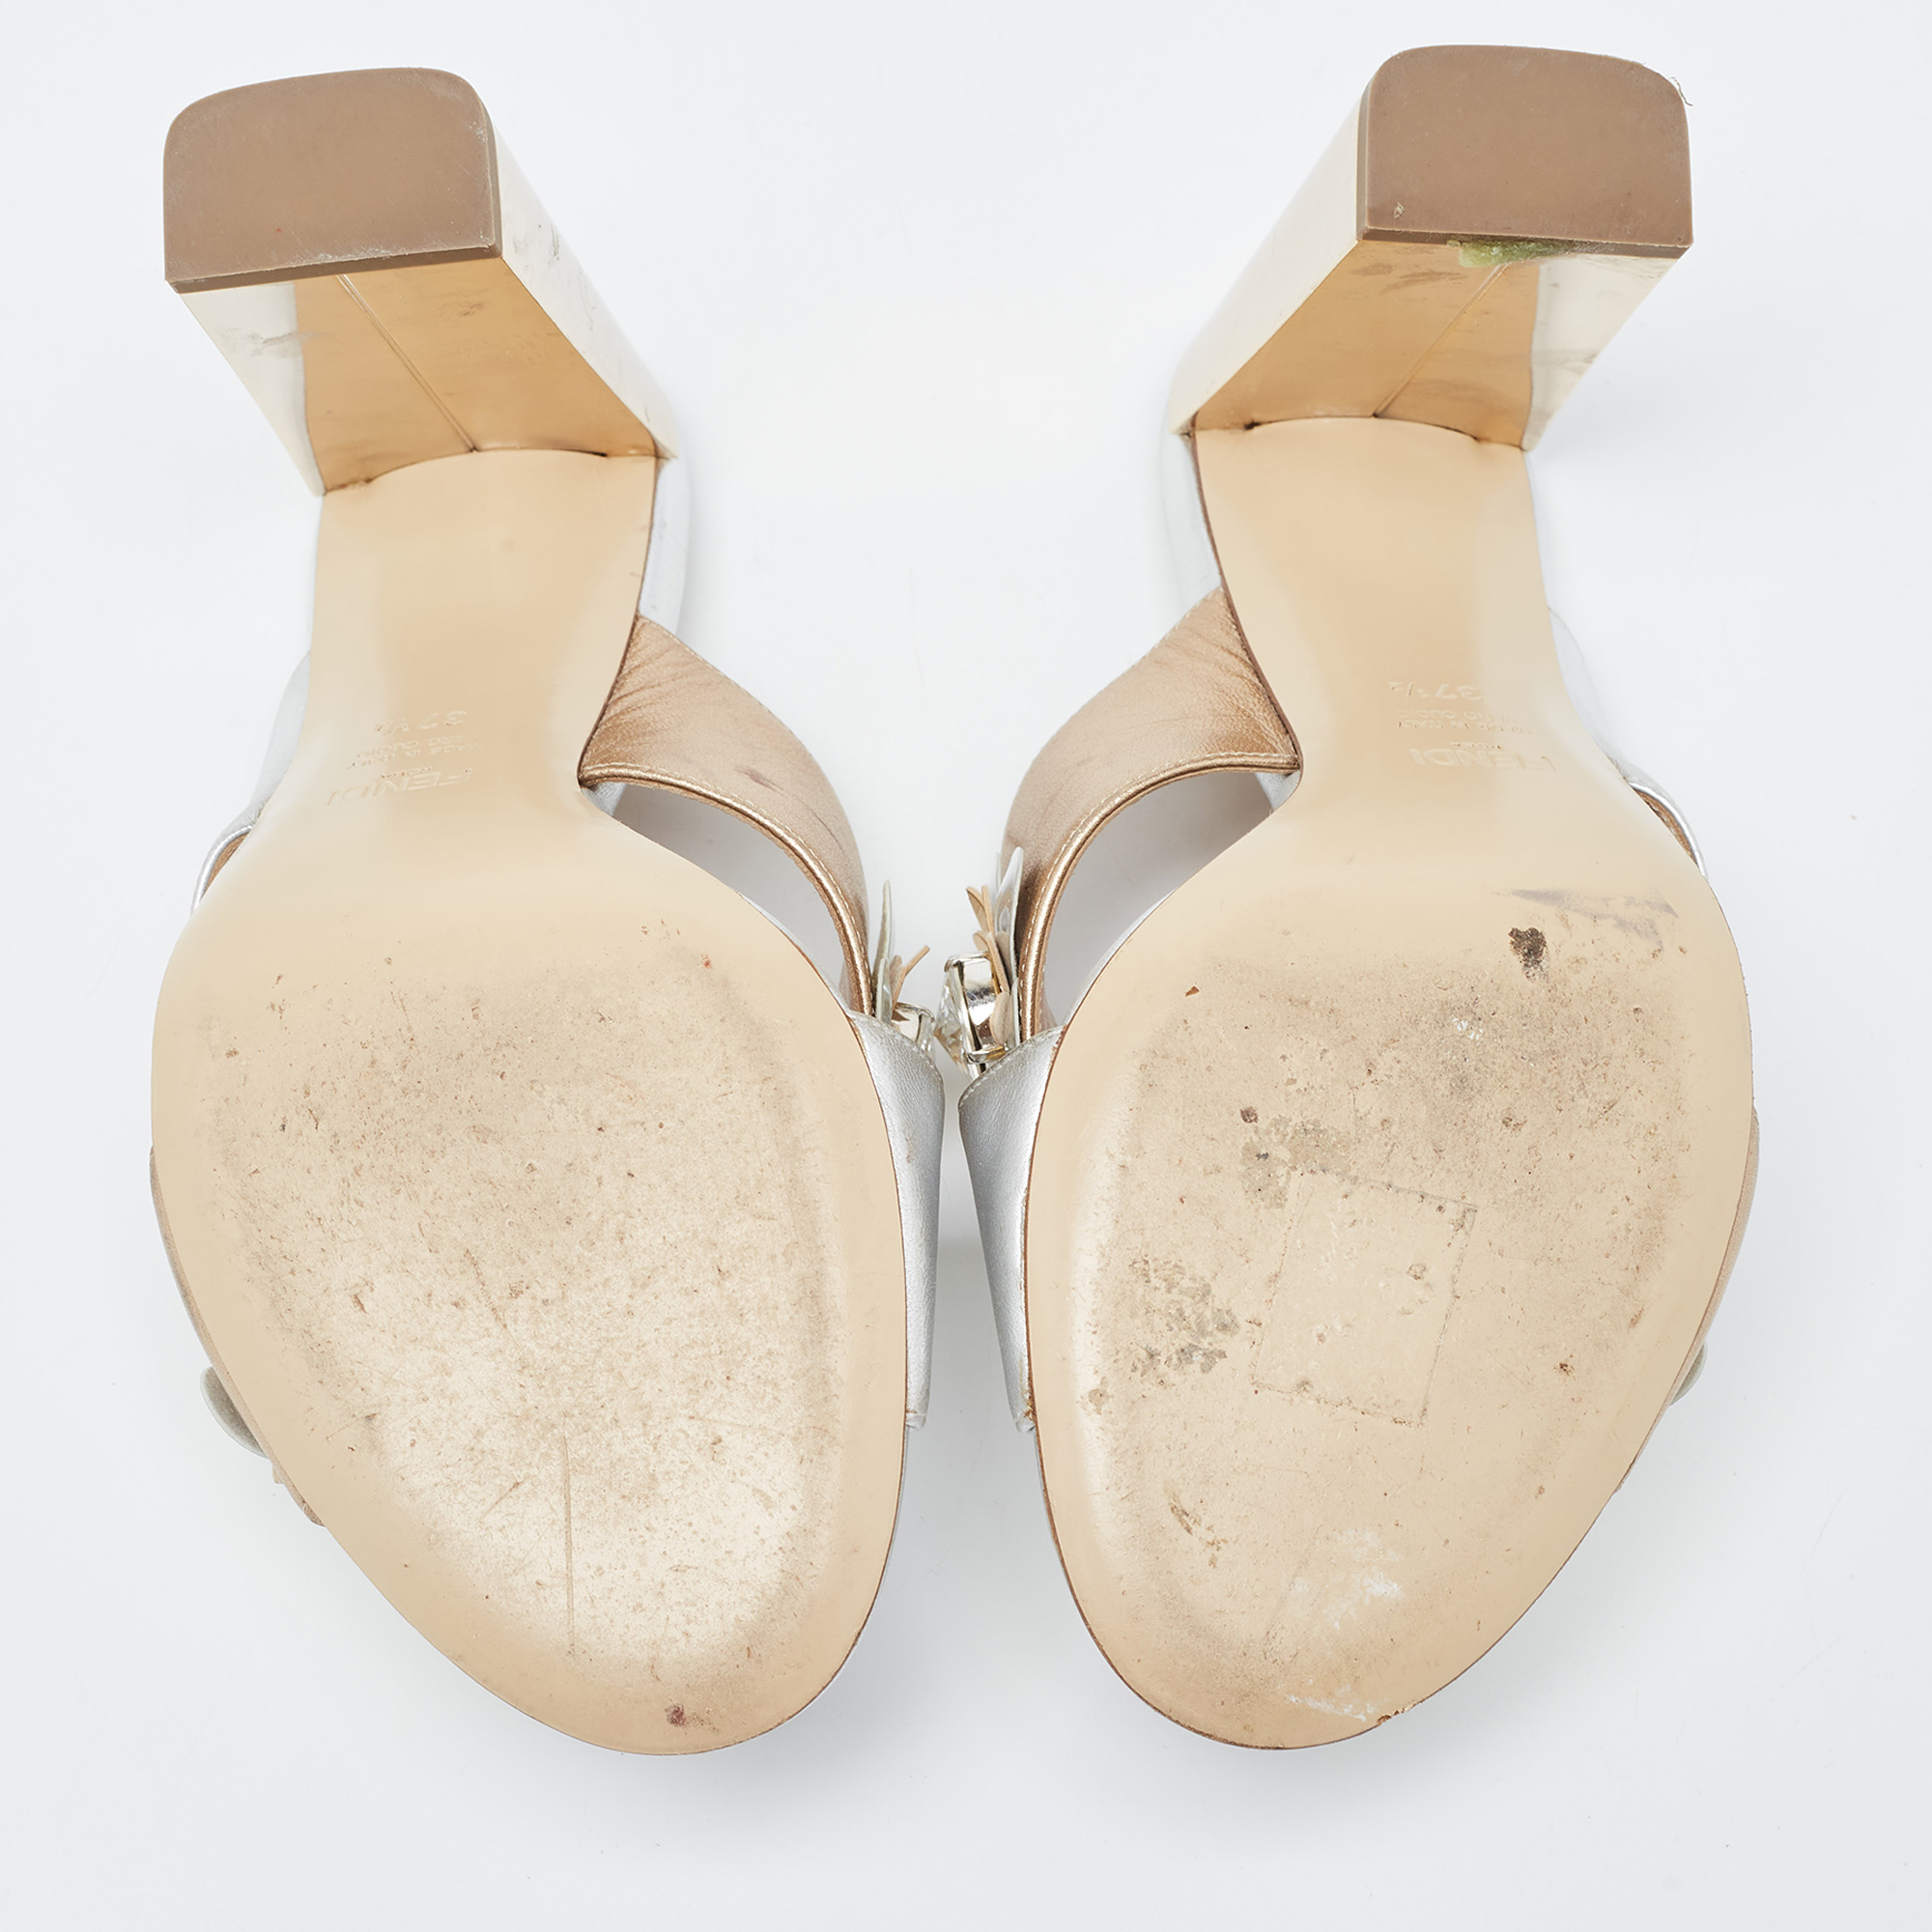 Fendi Silver/Gold Leather Flowerland Slide Sandals Size 37.5